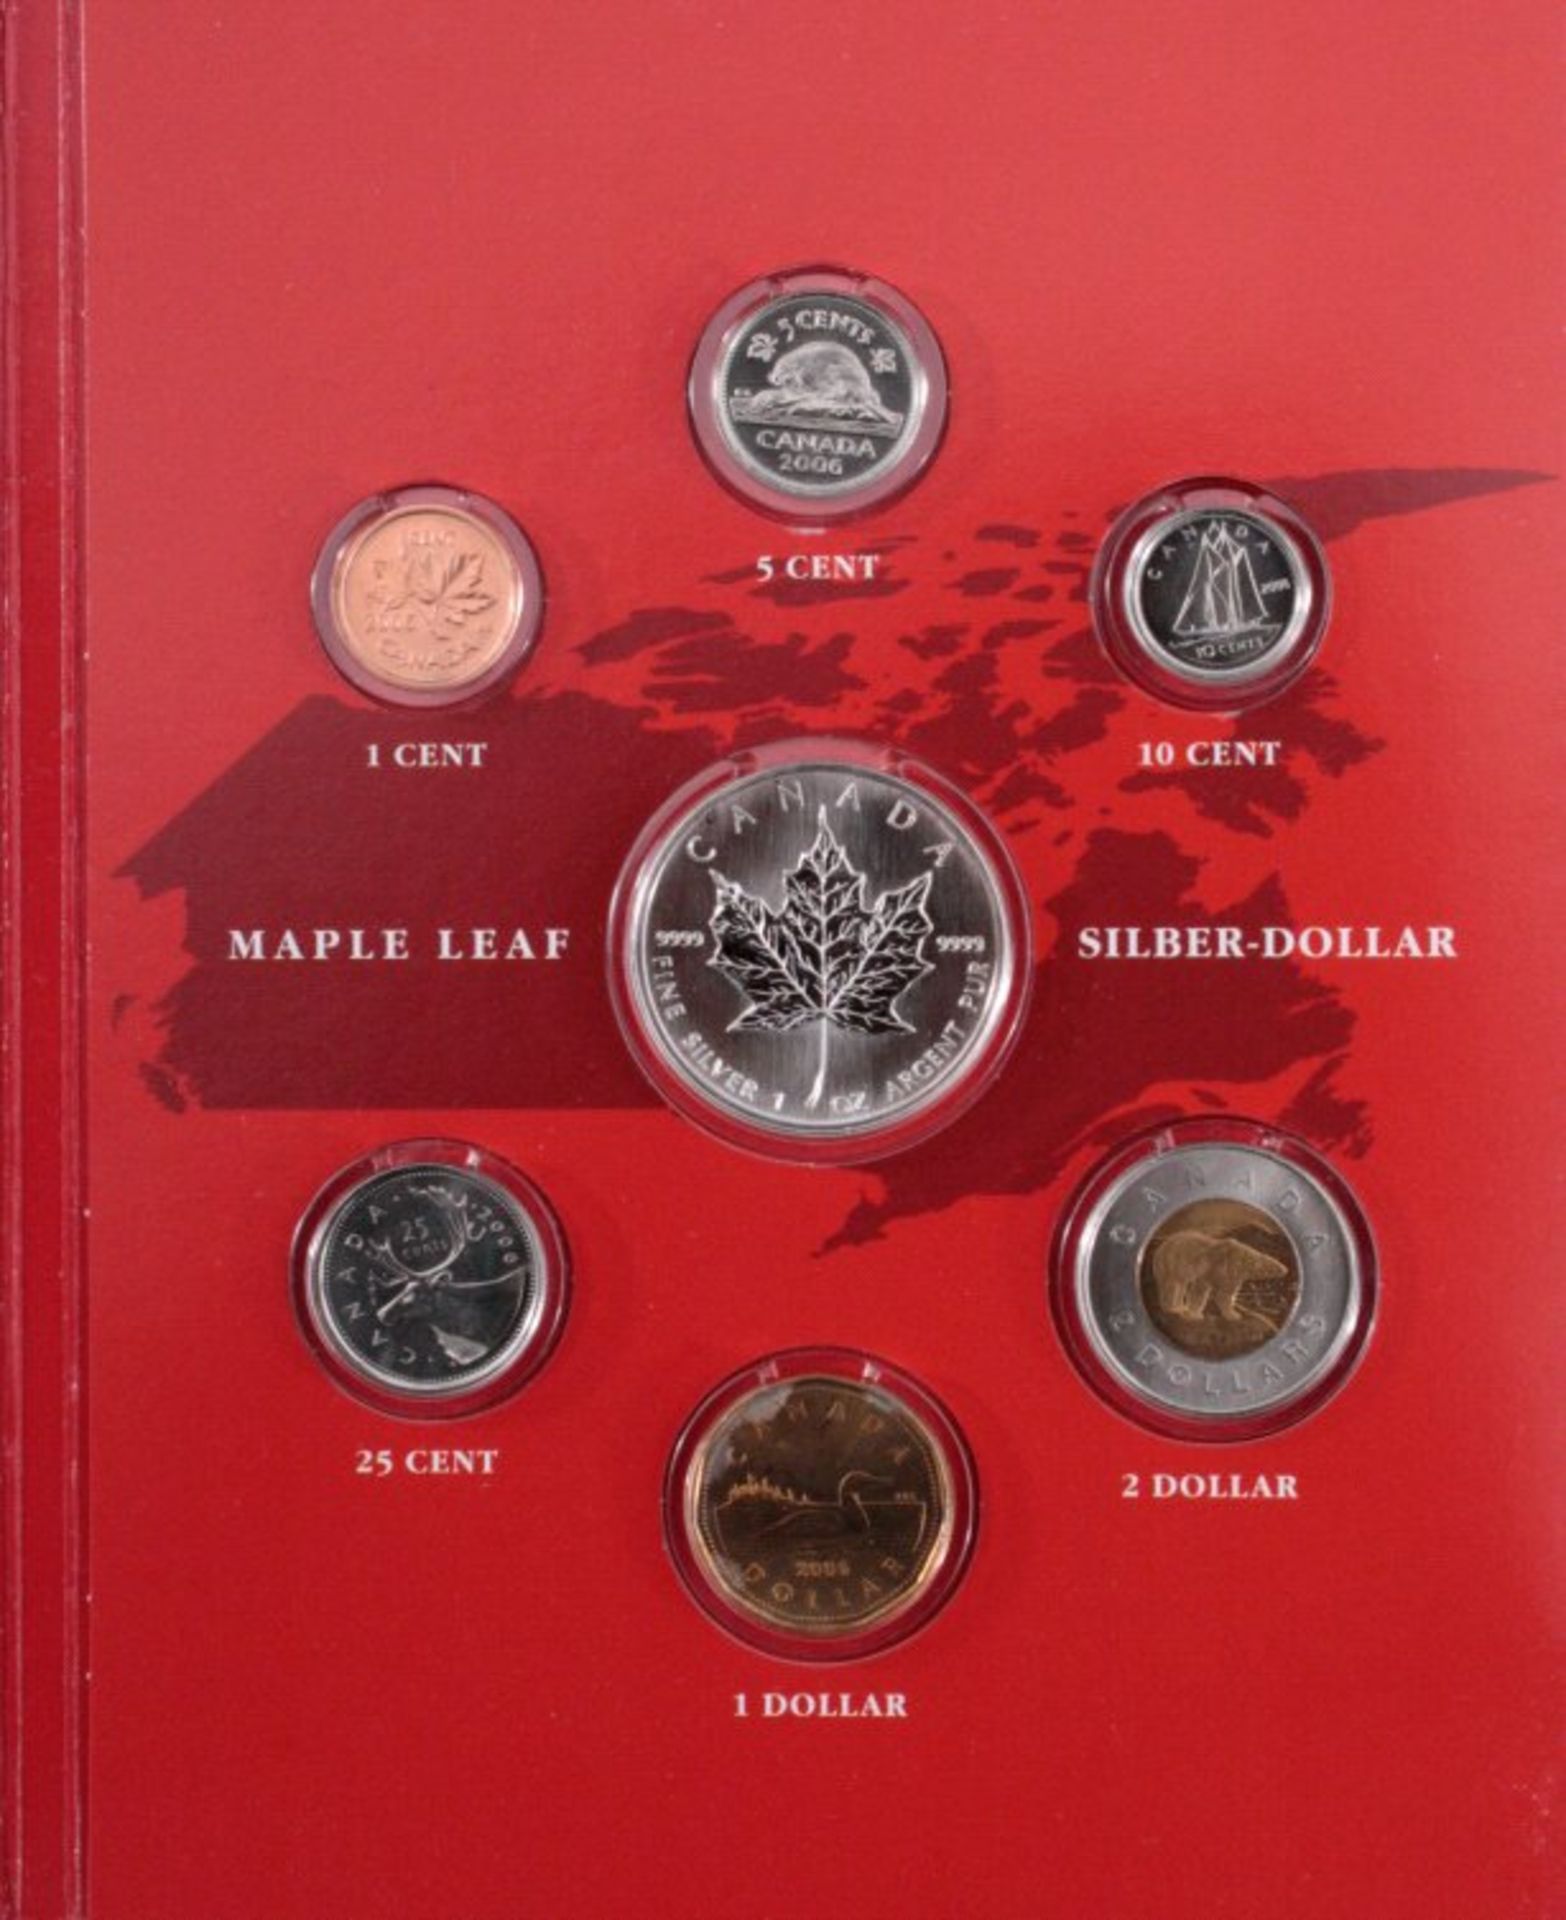 Kanada Jahressatz 20061 Cent bis 2 Dollar inkl. Maple Leaf